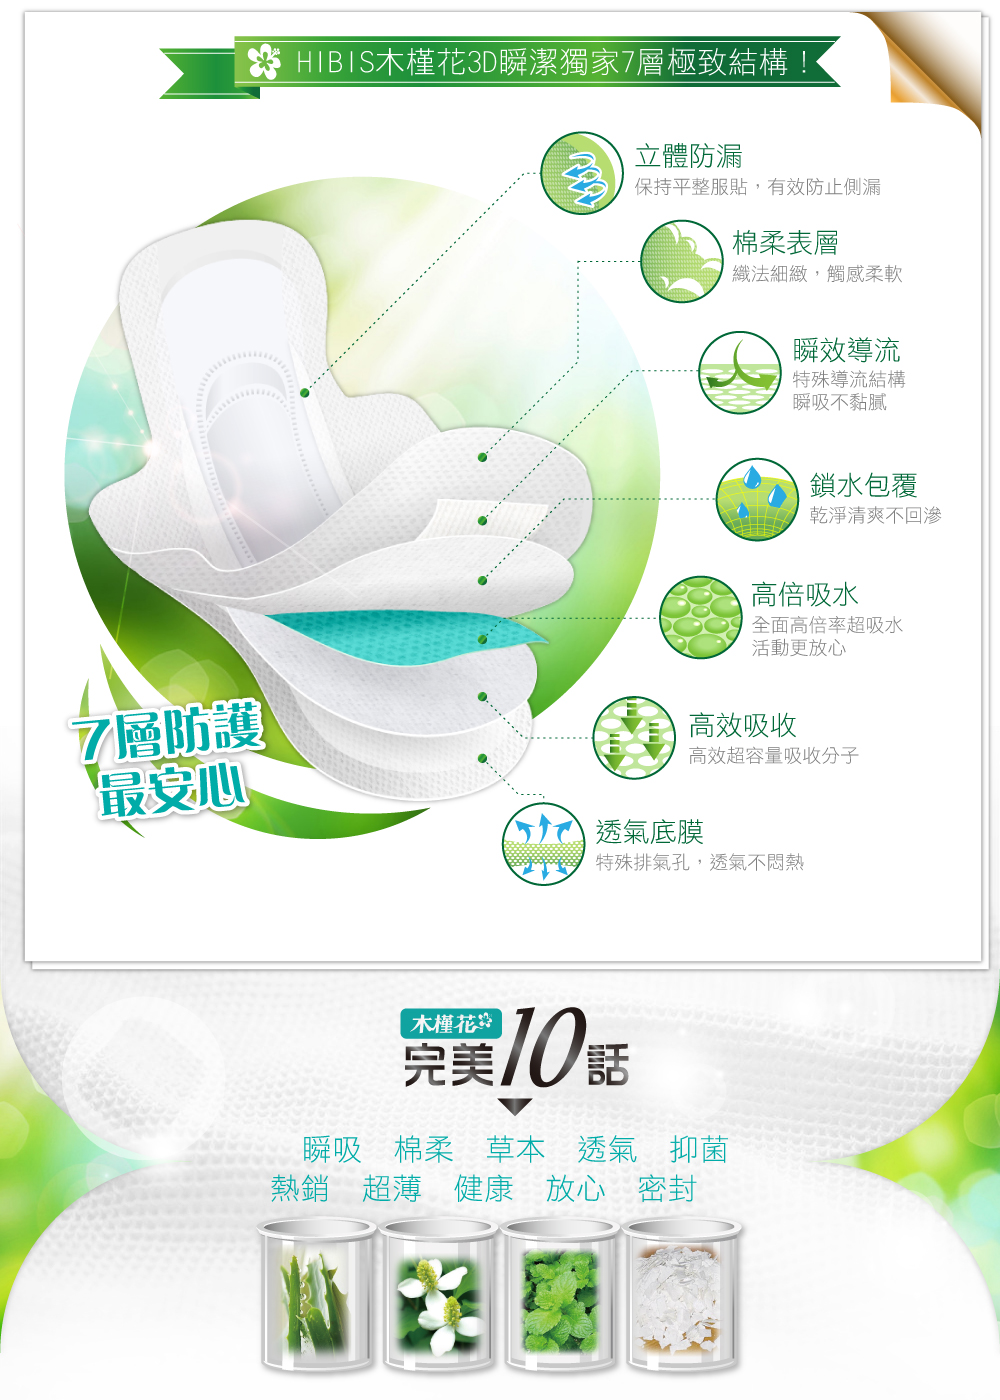 來自台灣的女性草本衛生棉品牌木槿花涼感衛生棉